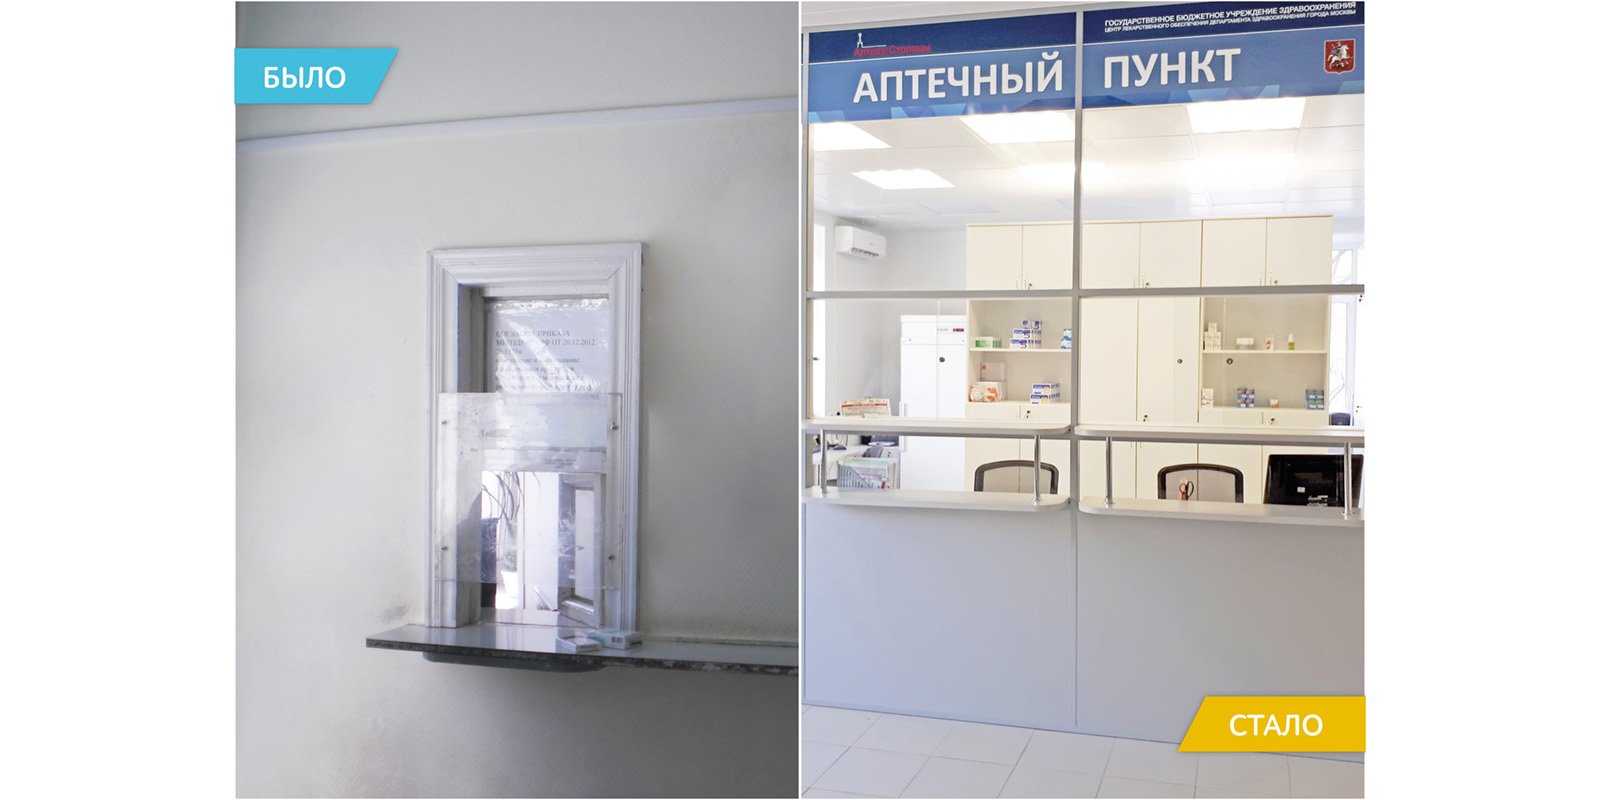 Всего в Москве сейчас работает более 260 льготных аптечных пунктов. Фото: mos.ru